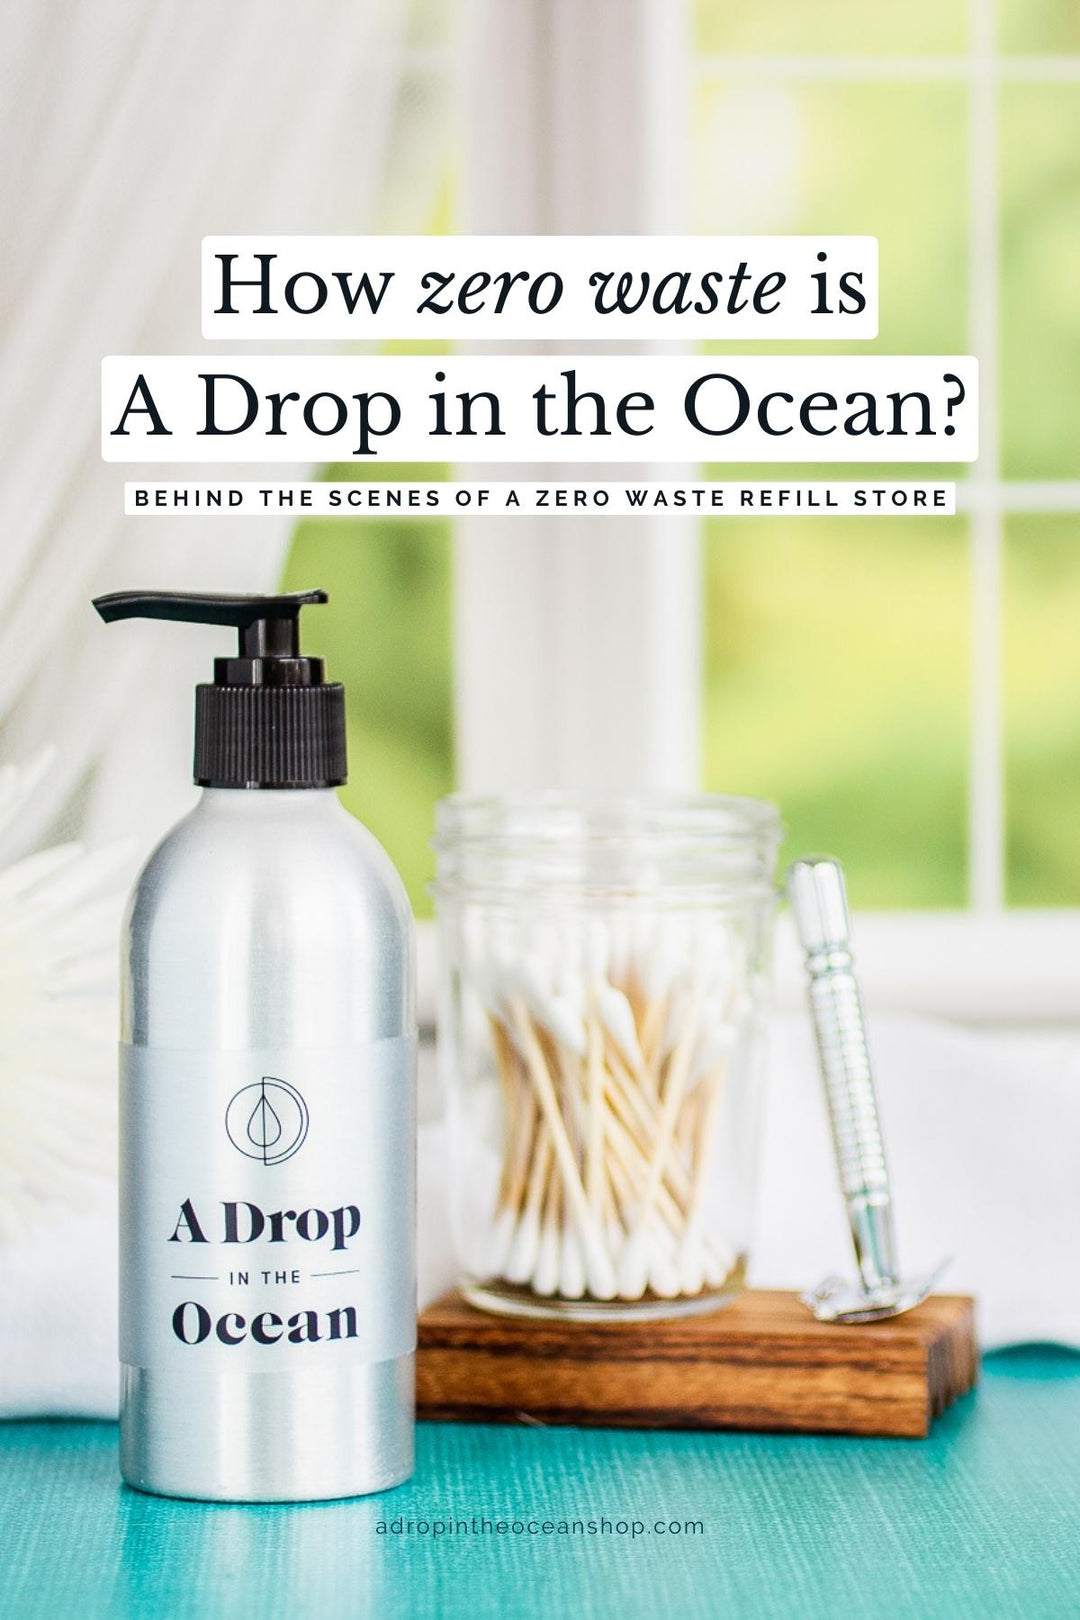 How zero waste is A Drop in the Ocean Shop?